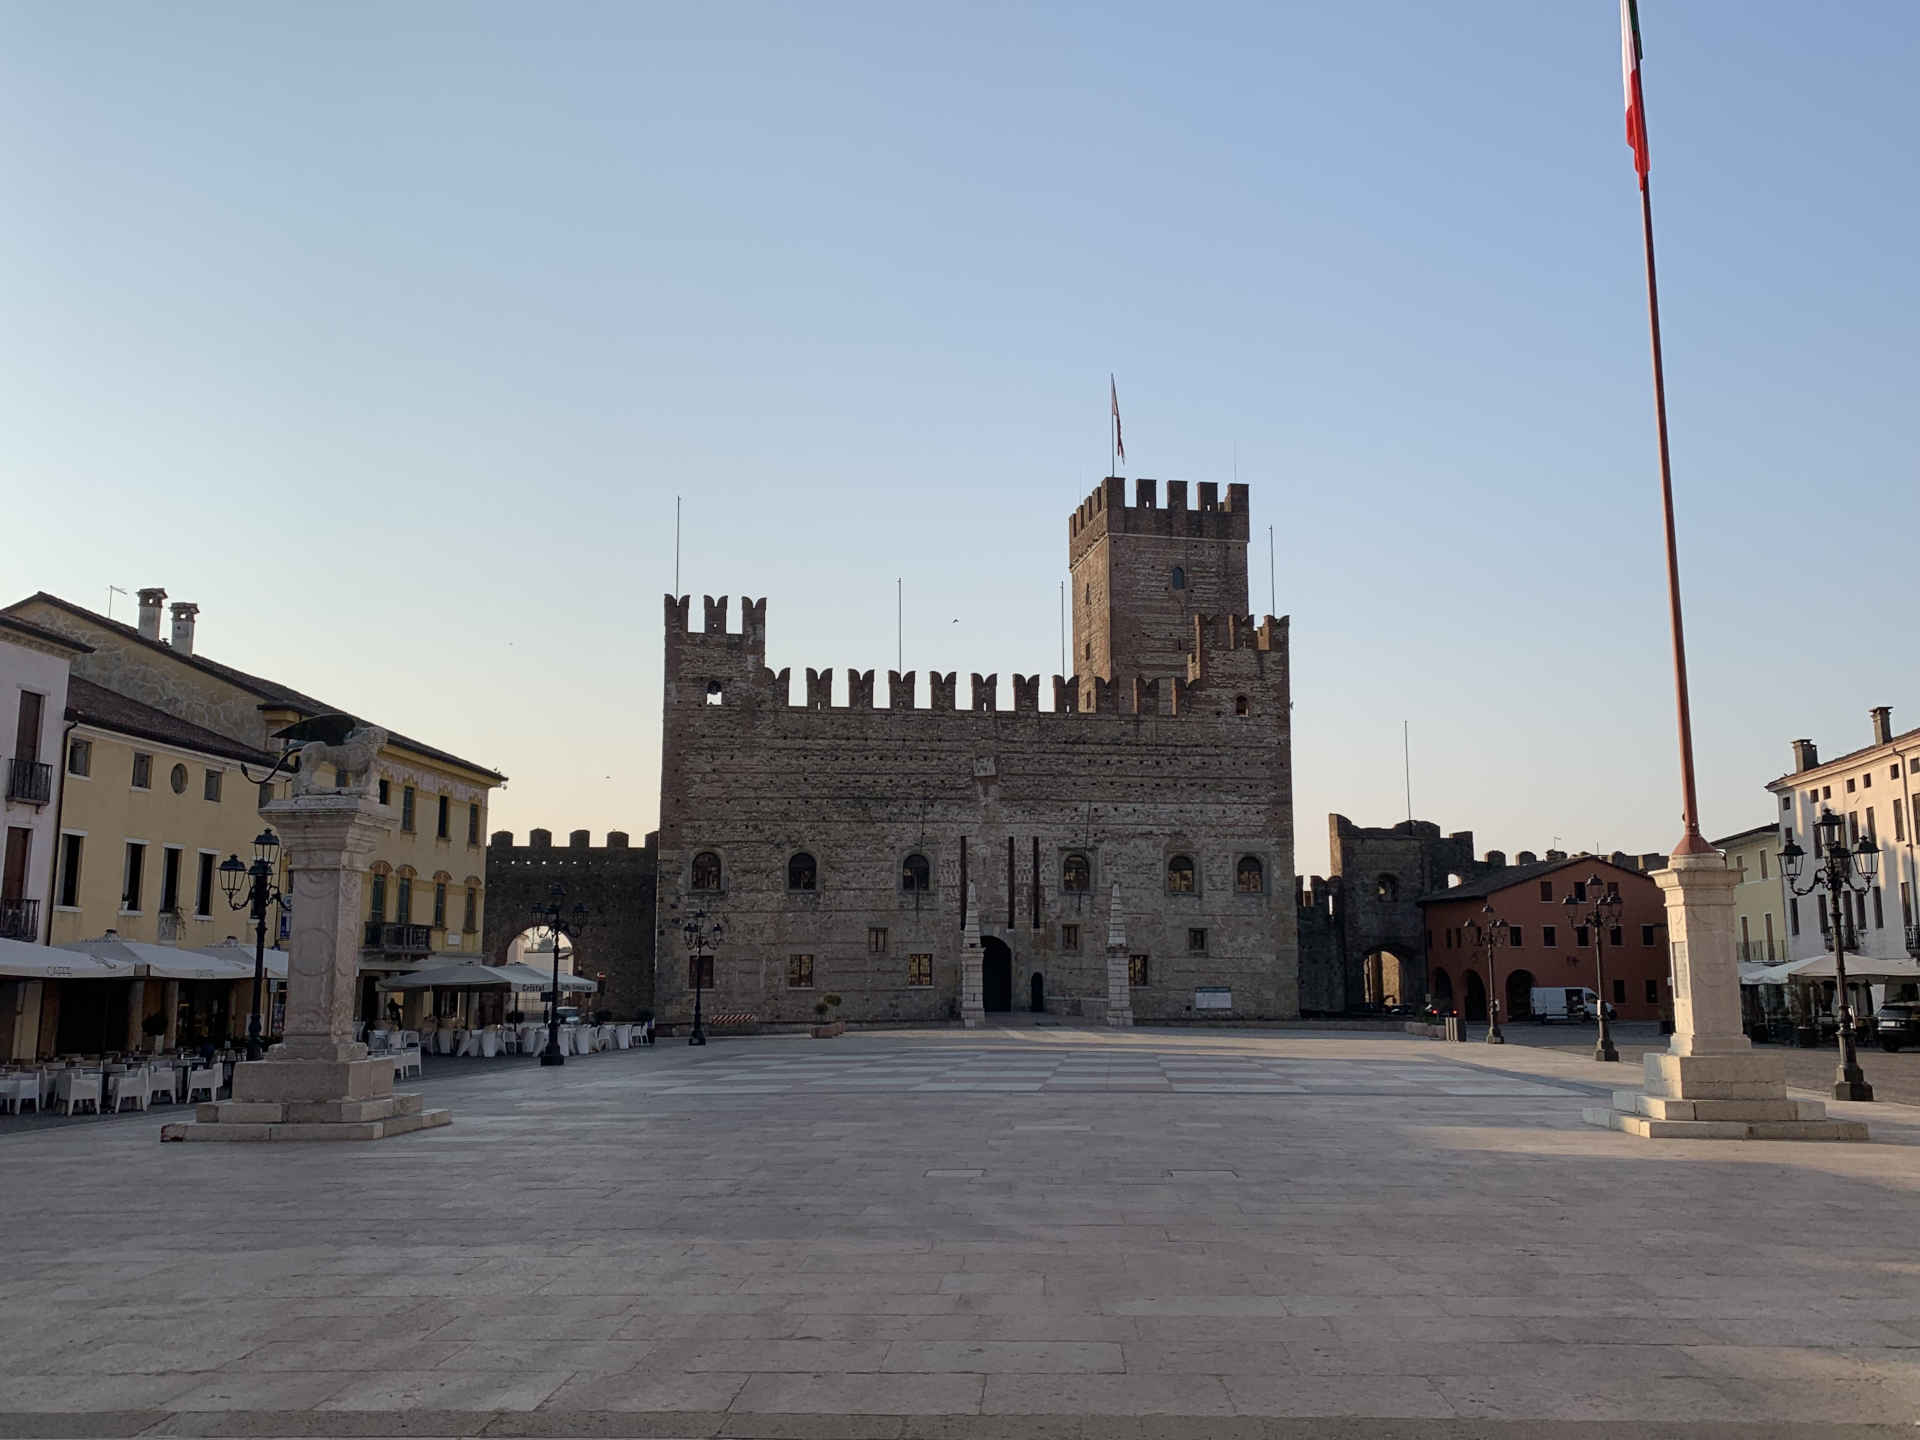 Fotos von Marostica, dem Schachplatz und der Unteren Burg